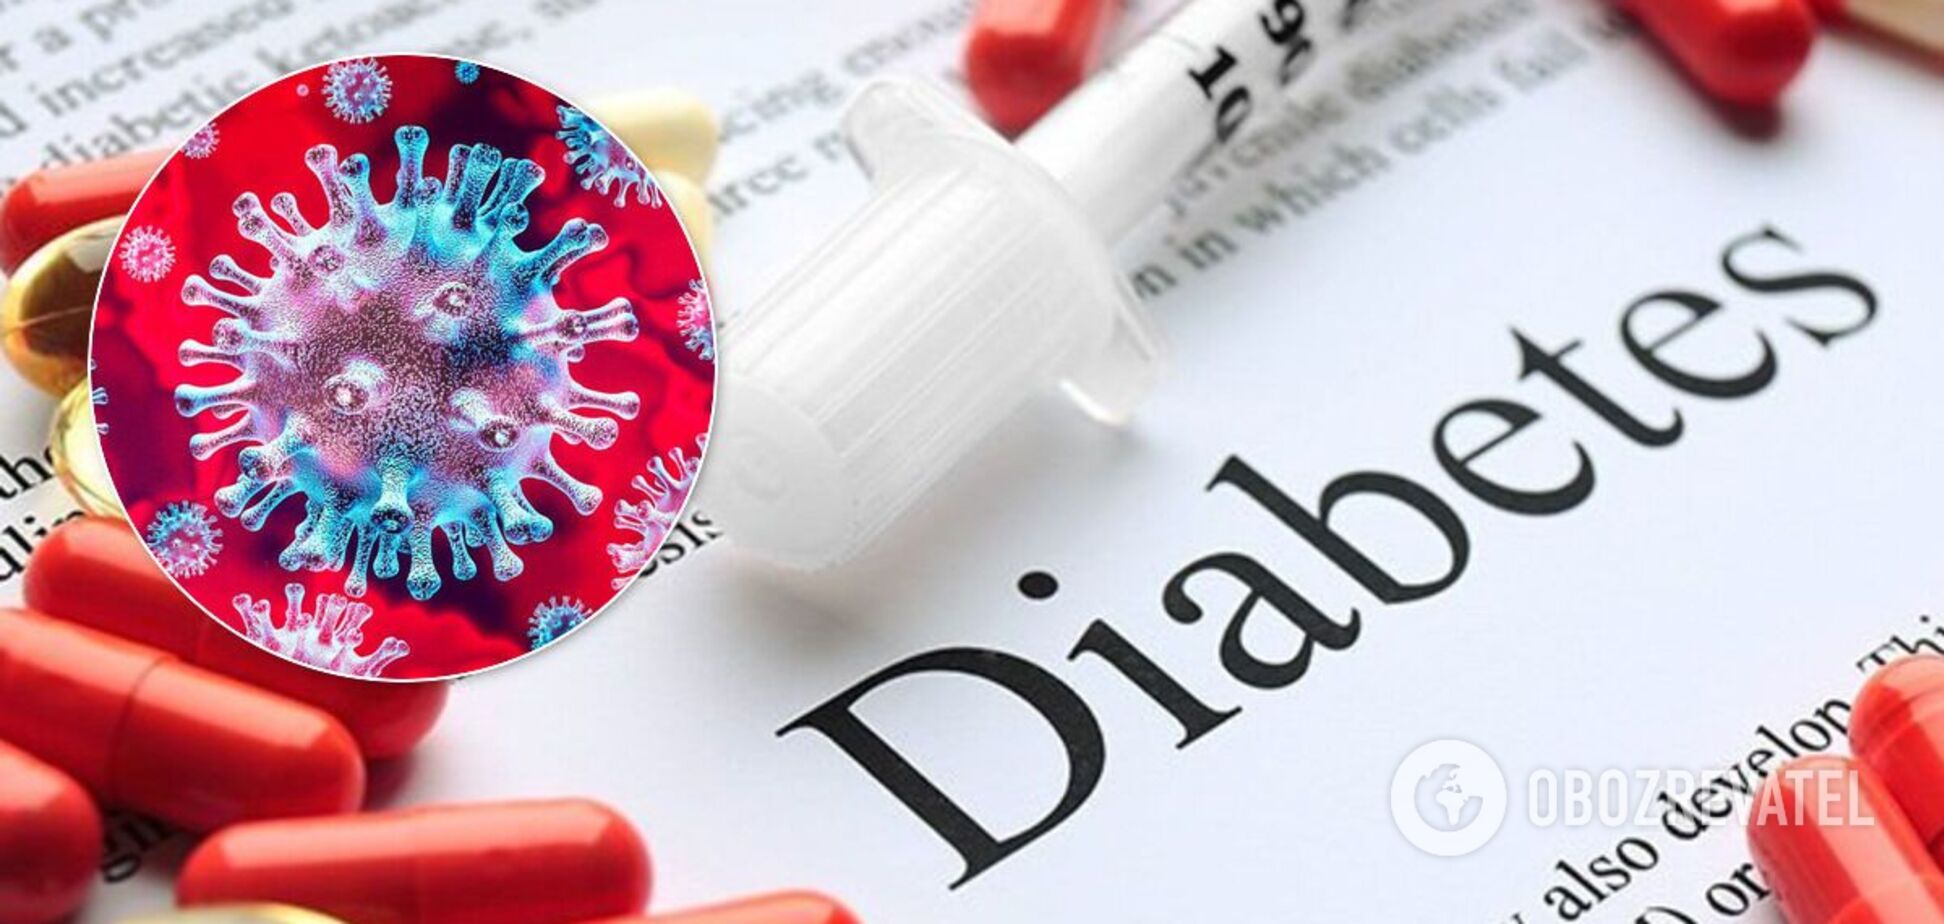 Прием лекарств от диабета может вызвать серьезное осложнение при COVID-19